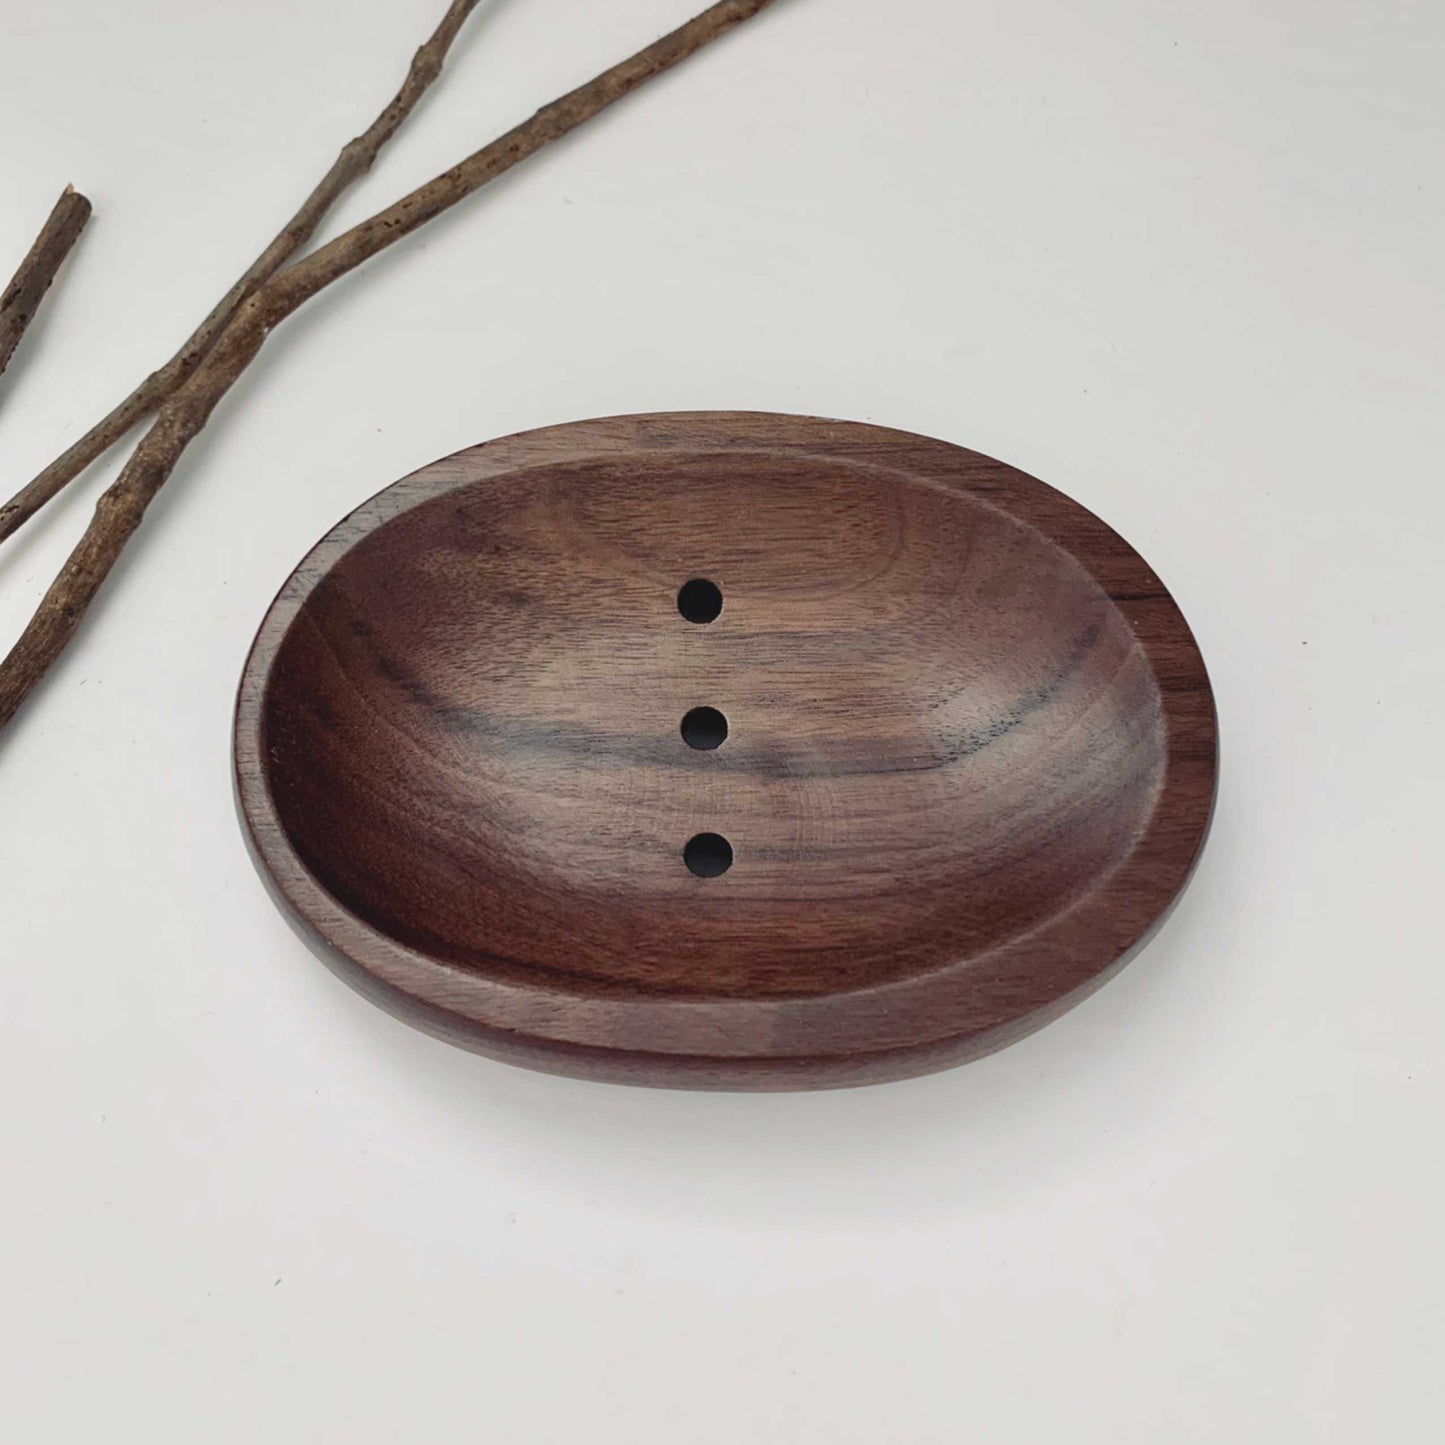 Porte-savon ovale en bois de noyer massif fabriqué à la main